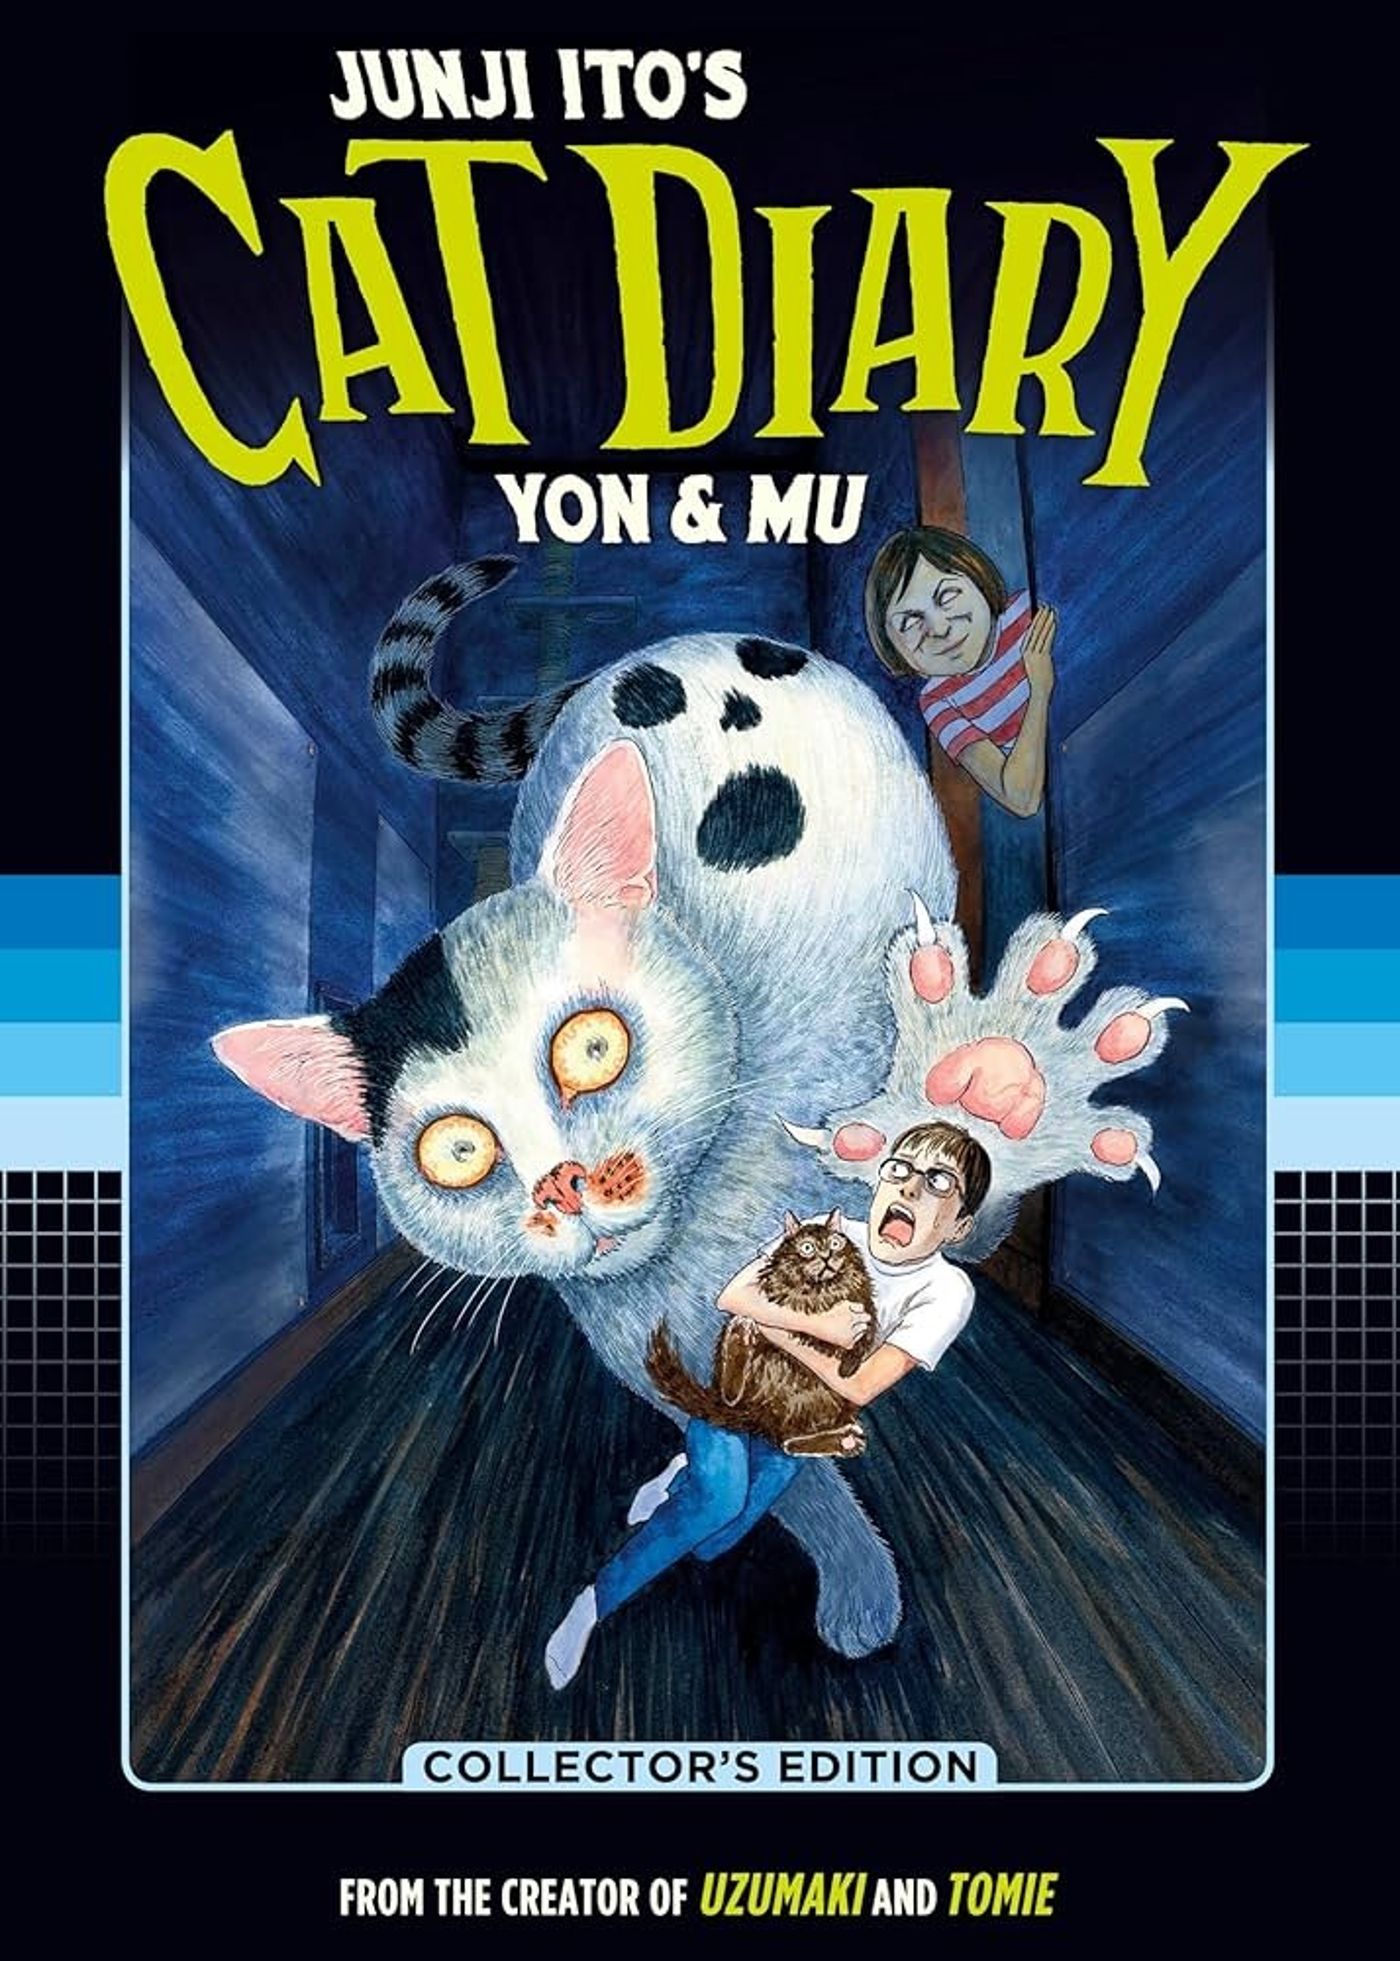 Arte da capa do diário de gato de Junji Ito, apresentando Ito e seu gato Mu sendo perseguidos por uma versão gigante de seu outro gato, Yon